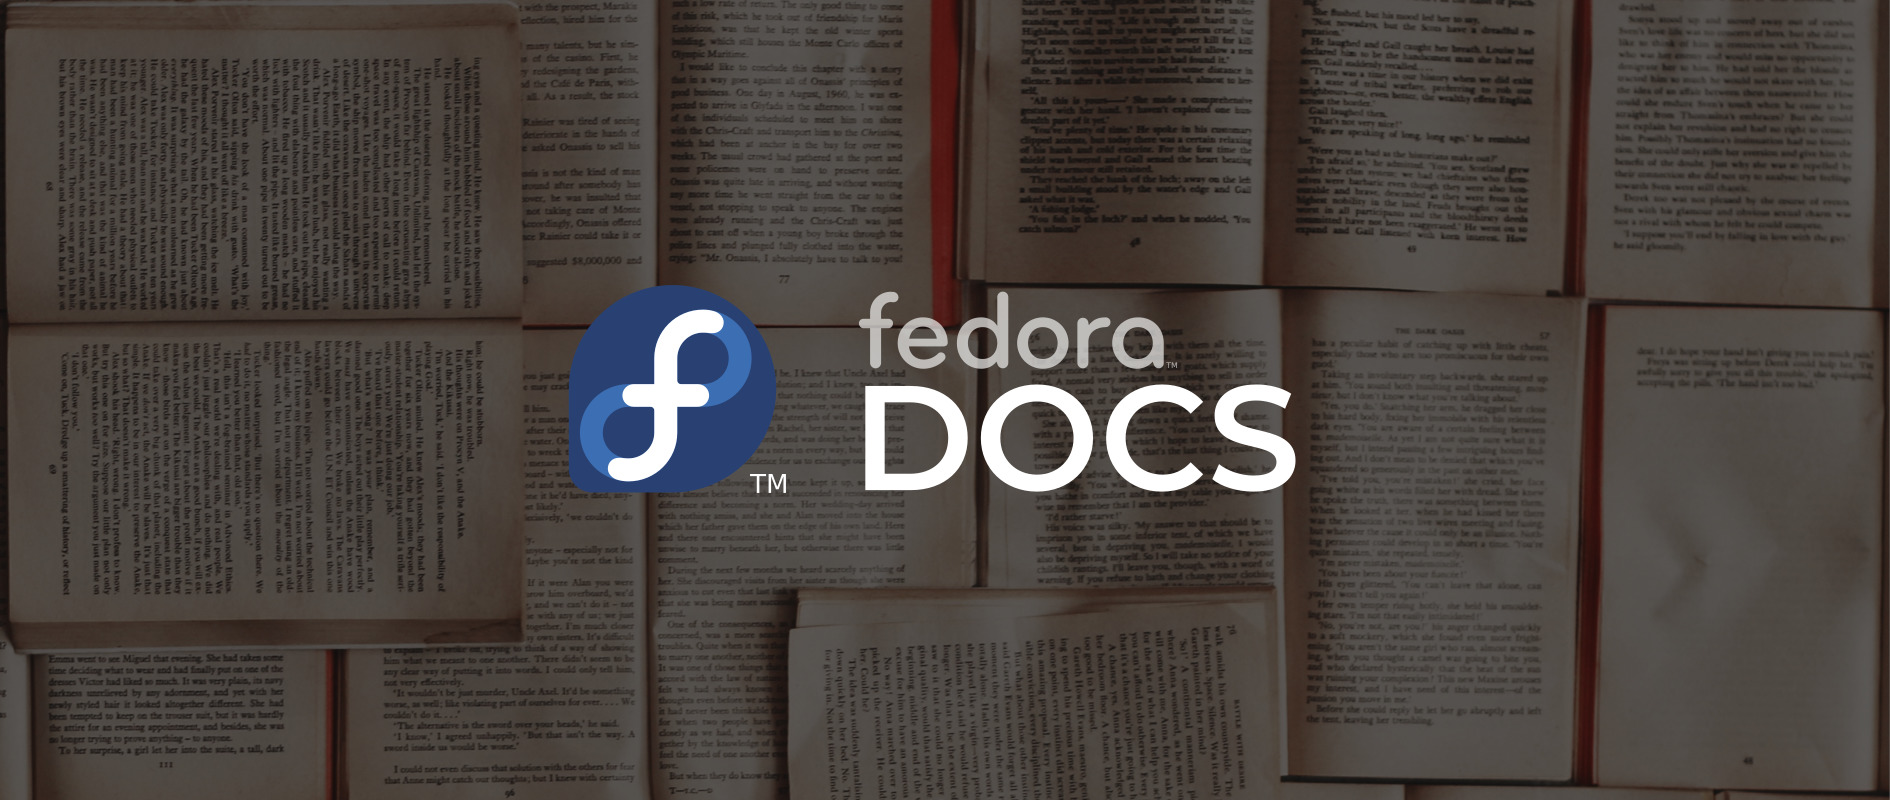 Fedora Ticari Markalı Fedora Belgelendirme Takımı logosu; arka planda kitap sayfaları.